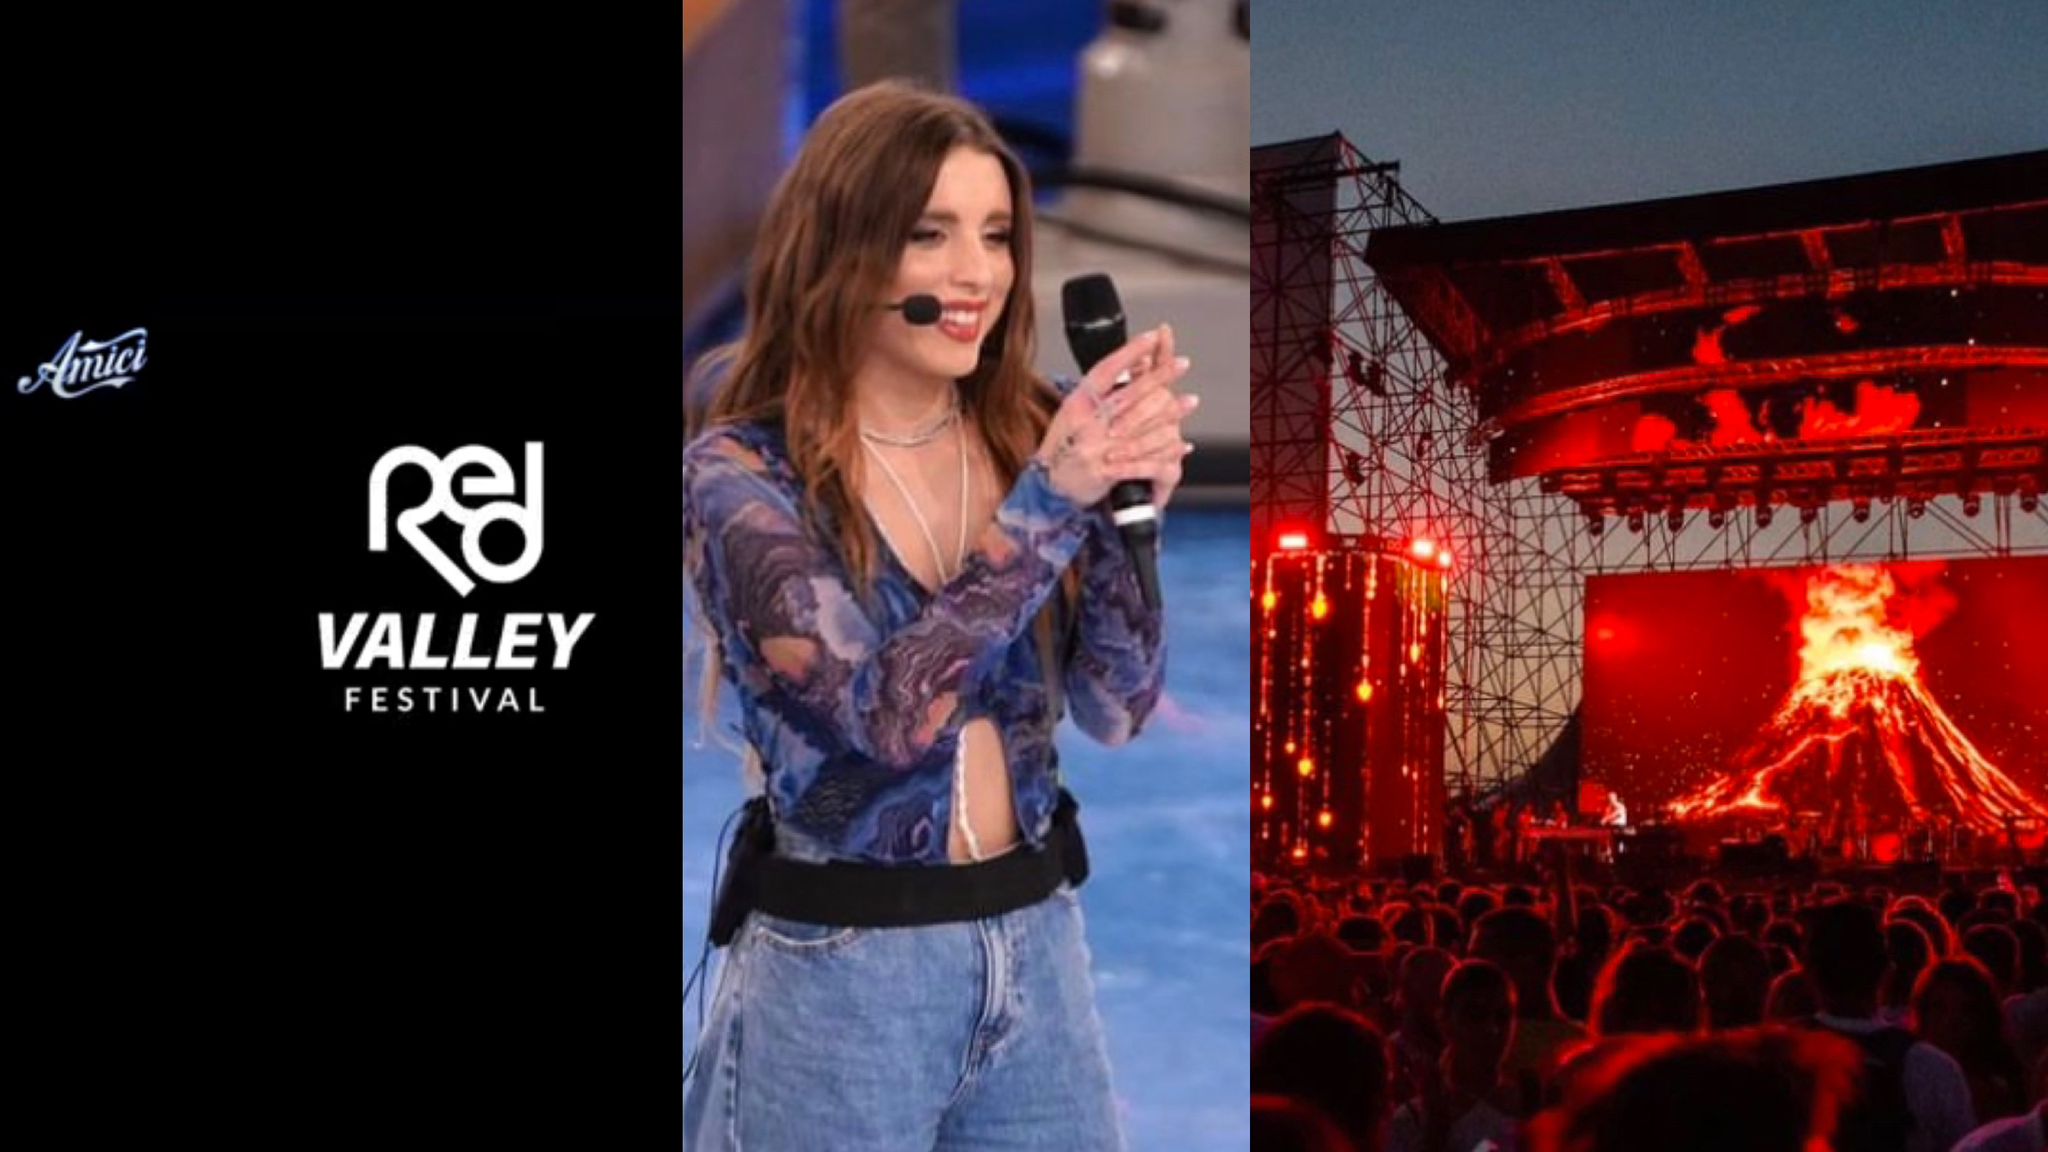 Olbia, Red Valley e Amici: la cantante Angelina si esibirà al Festival